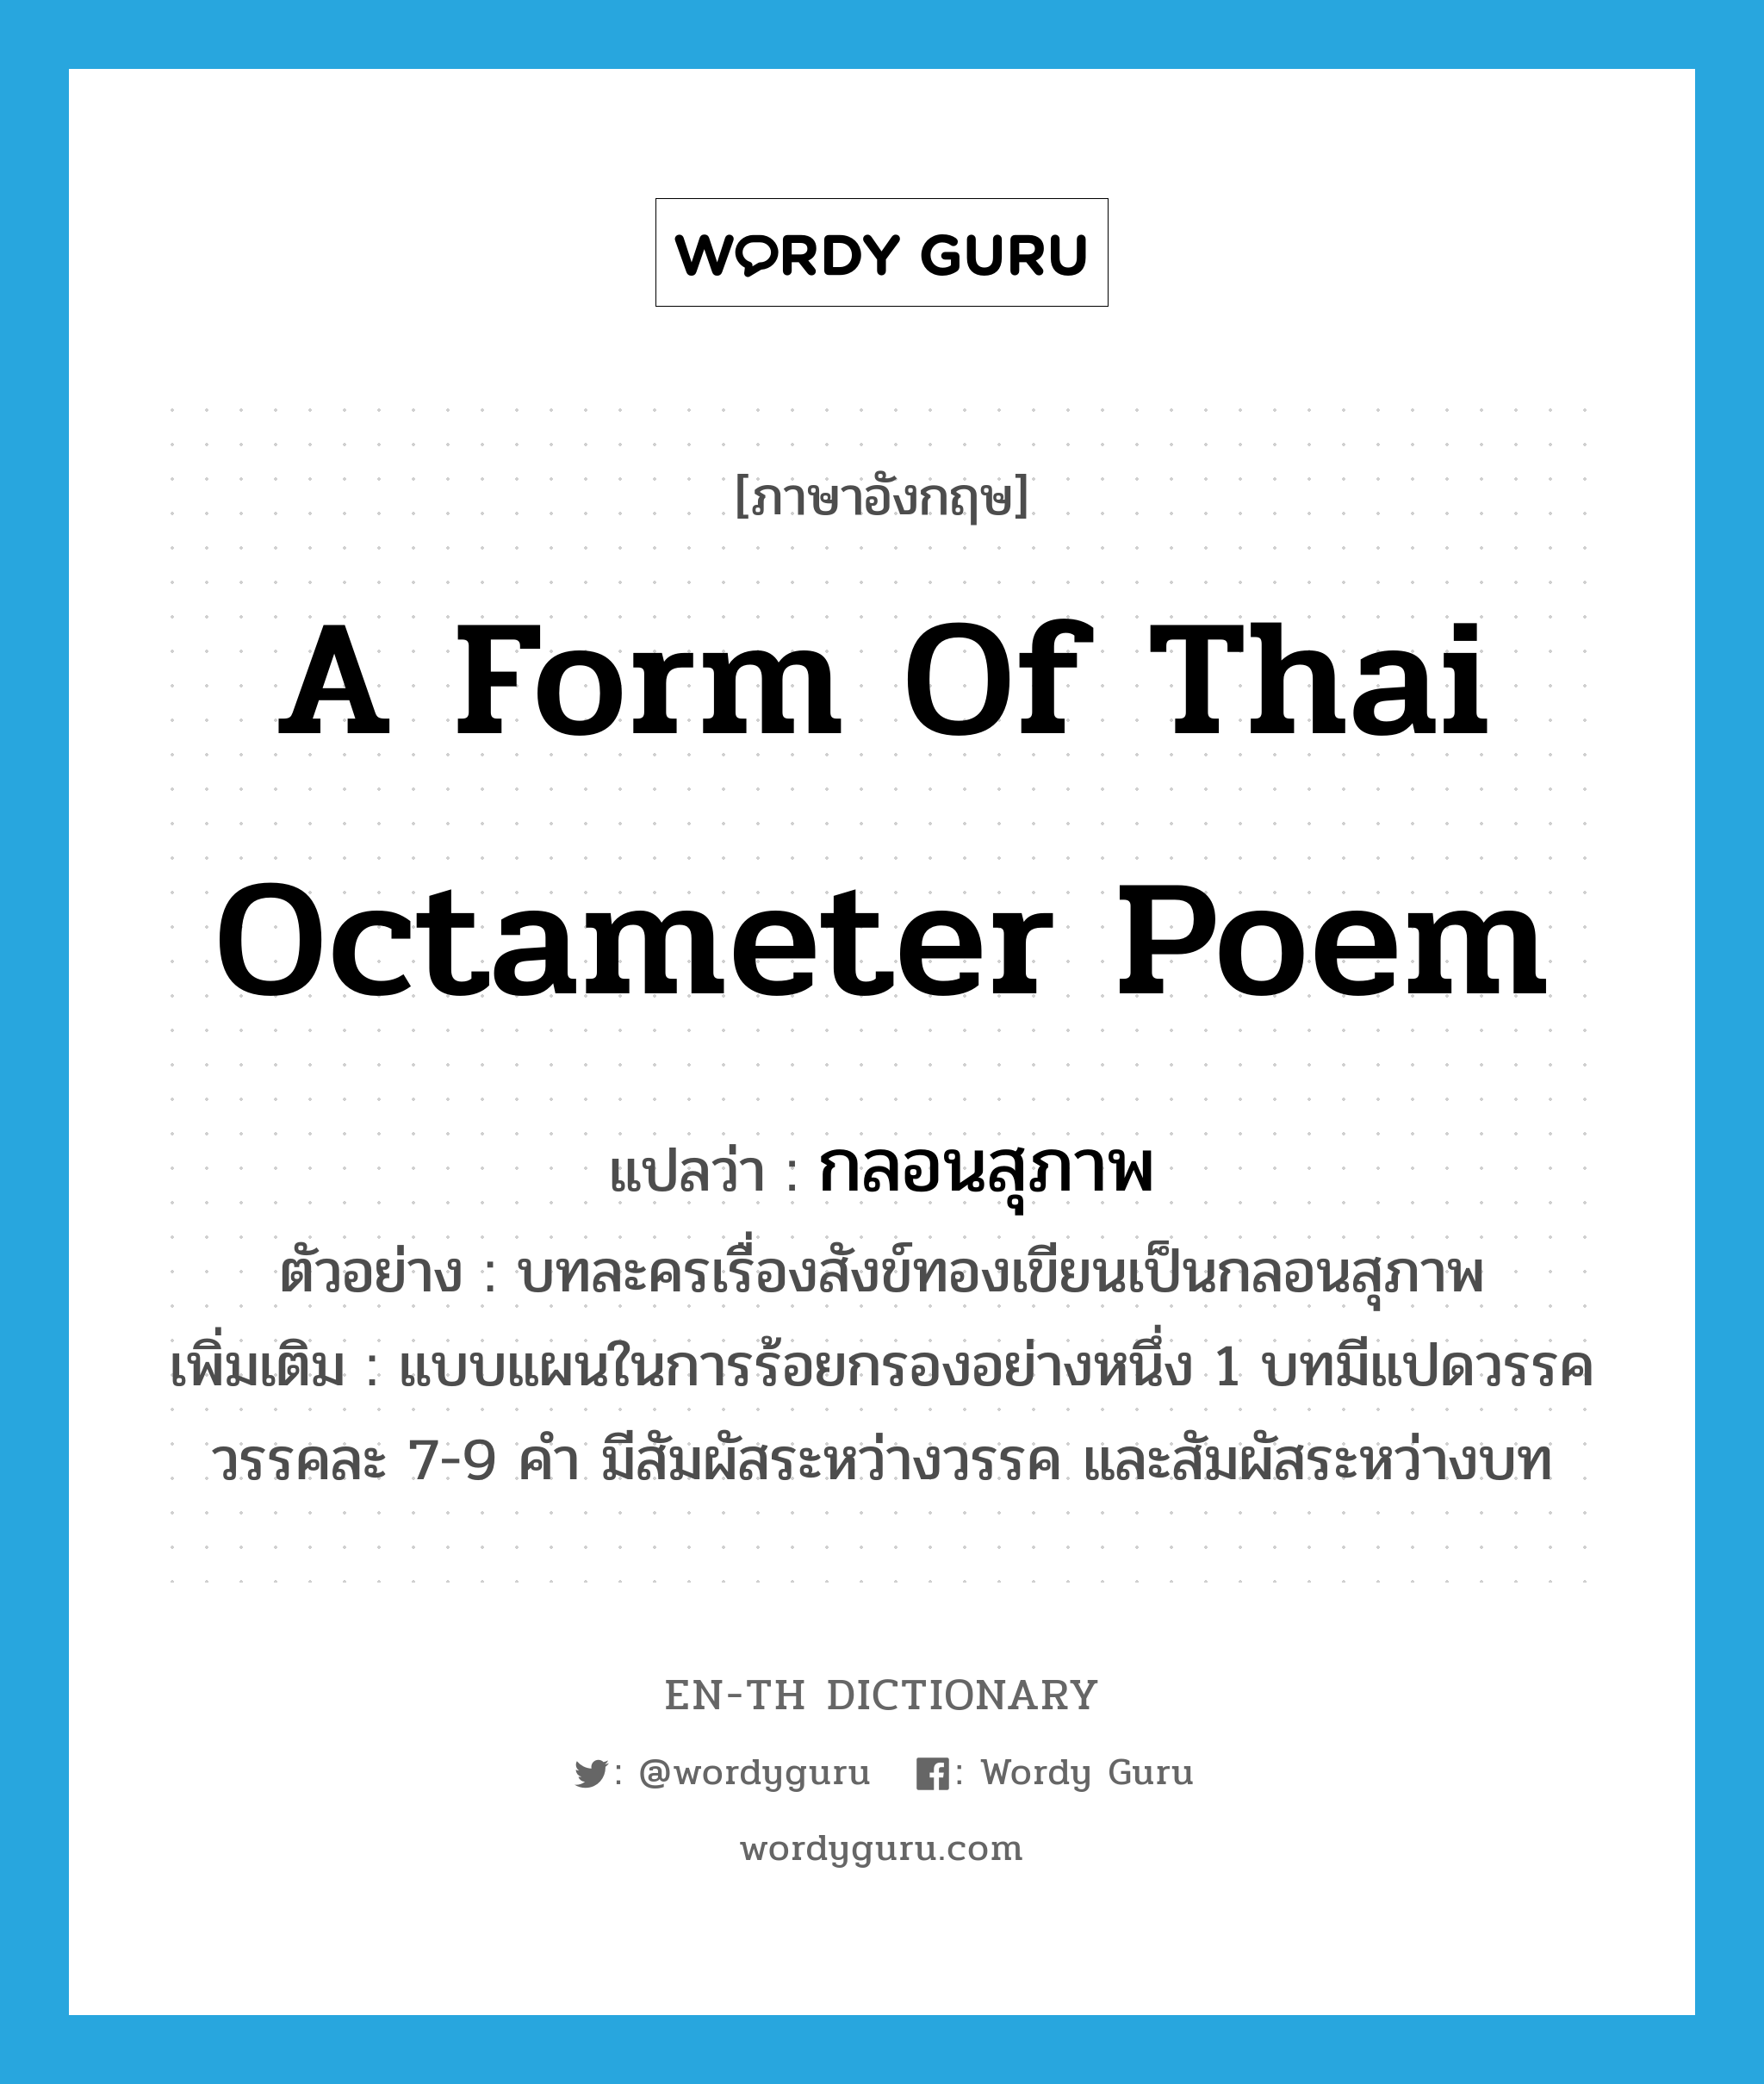 a form of Thai octameter poem แปลว่า? คำศัพท์ในกลุ่มประเภท N, คำศัพท์ภาษาอังกฤษ a form of Thai octameter poem แปลว่า กลอนสุภาพ ประเภท N ตัวอย่าง บทละครเรื่องสังข์ทองเขียนเป็นกลอนสุภาพ เพิ่มเติม แบบแผนในการร้อยกรองอย่างหนึ่ง 1 บทมีแปดวรรค วรรคละ 7-9 คำ มีสัมผัสระหว่างวรรค และสัมผัสระหว่างบท หมวด N